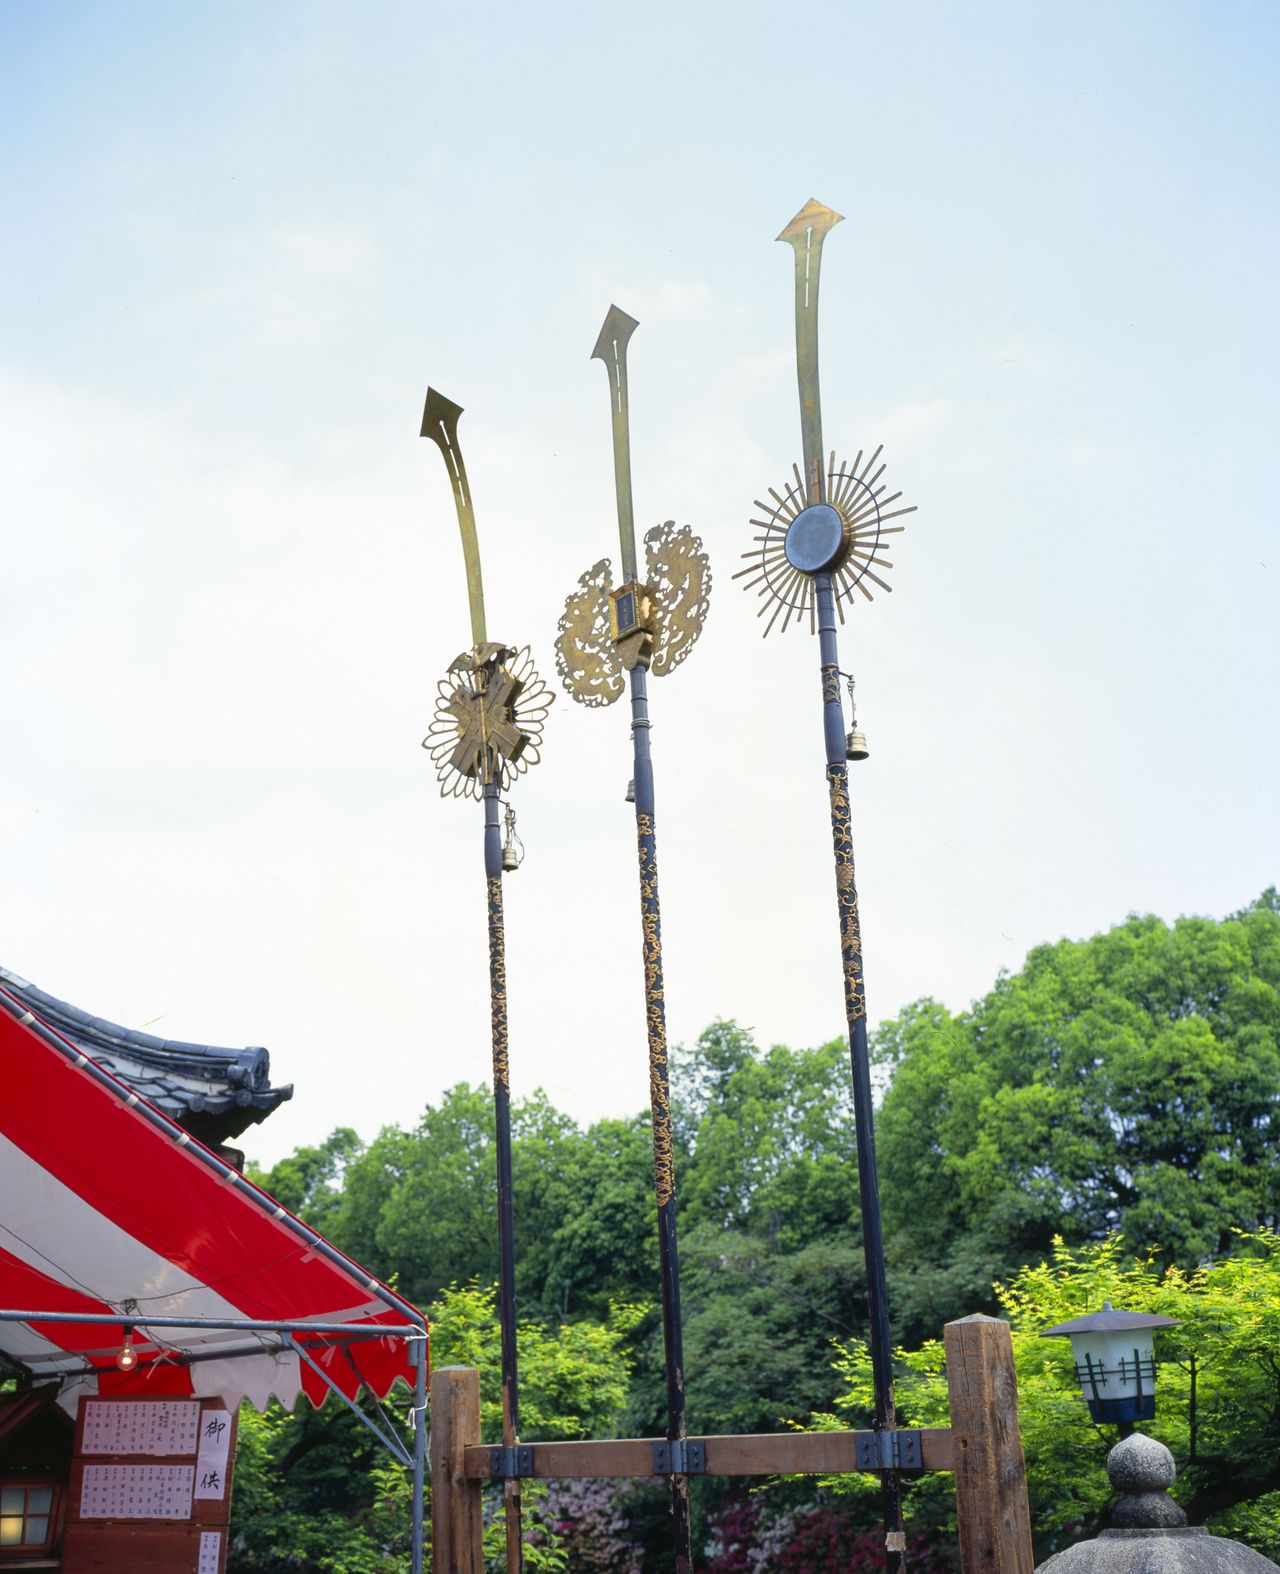 «Копья-мечи» кэмбоко в саду Синсэнъэн. Копьё здесь выступает как ритуальный инструмент, прототип для появившихся позднее повозок ямахоко